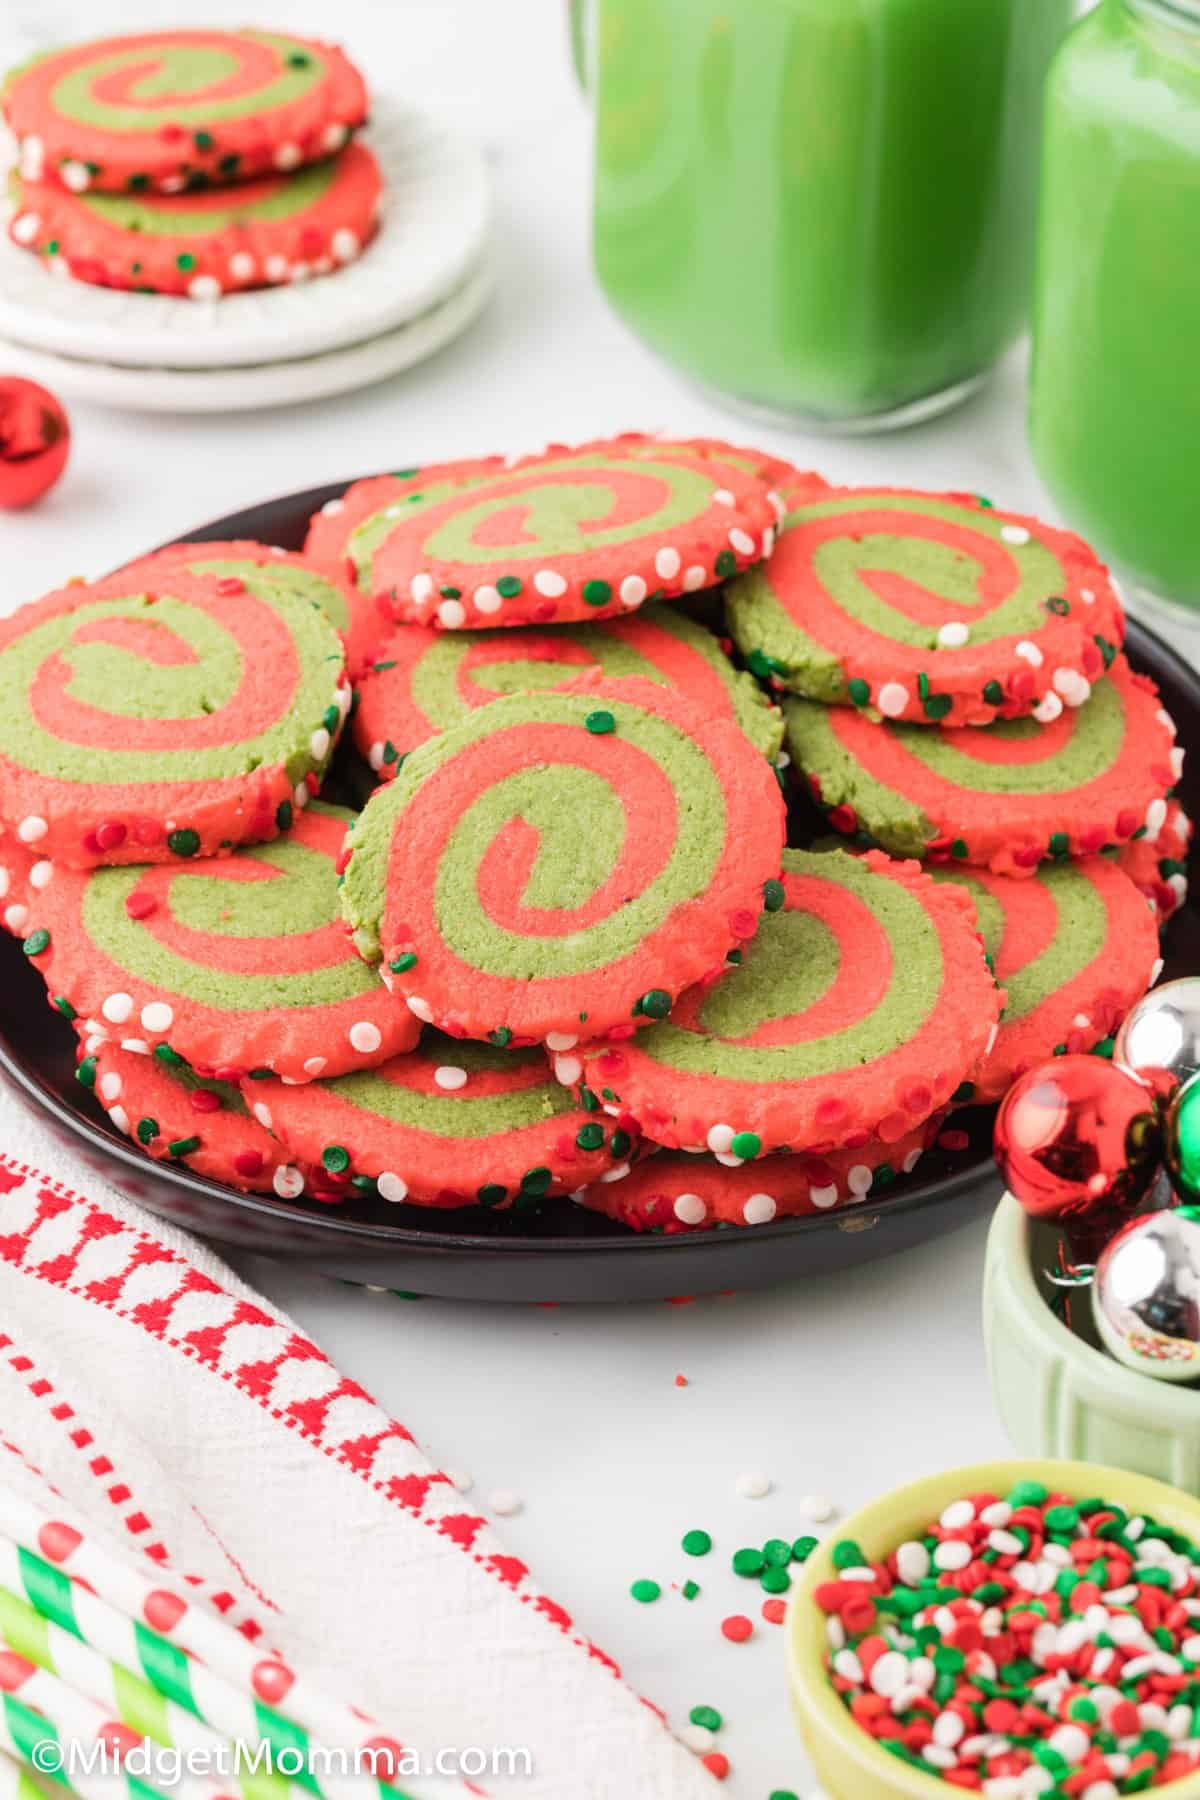 Whoville Cookies - Christmas Pinwheel Cookies Recipe